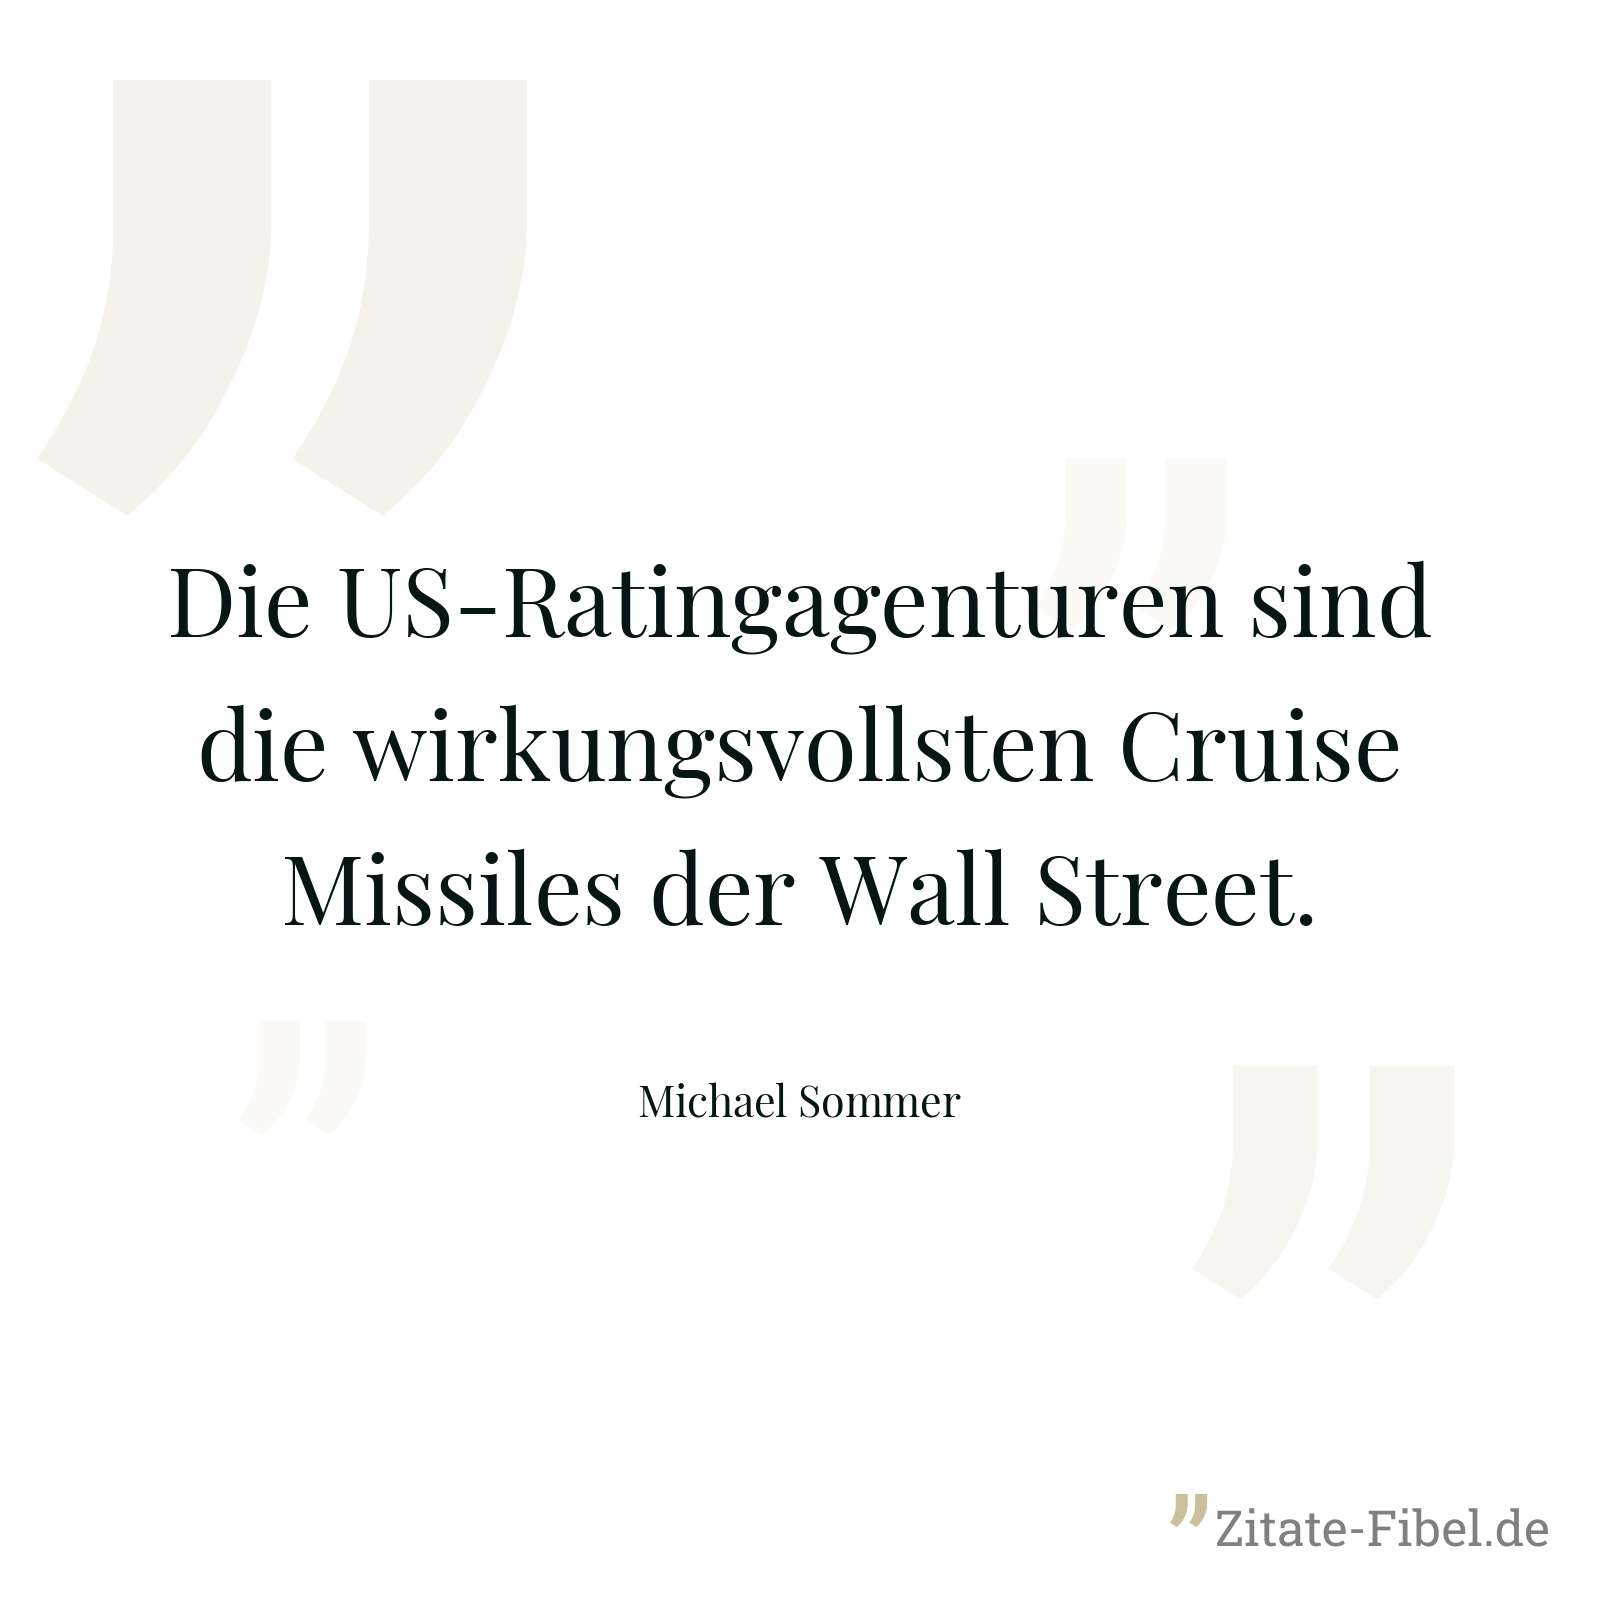 Die US-Ratingagenturen sind die wirkungsvollsten Cruise Missiles der Wall Street. - Michael Sommer